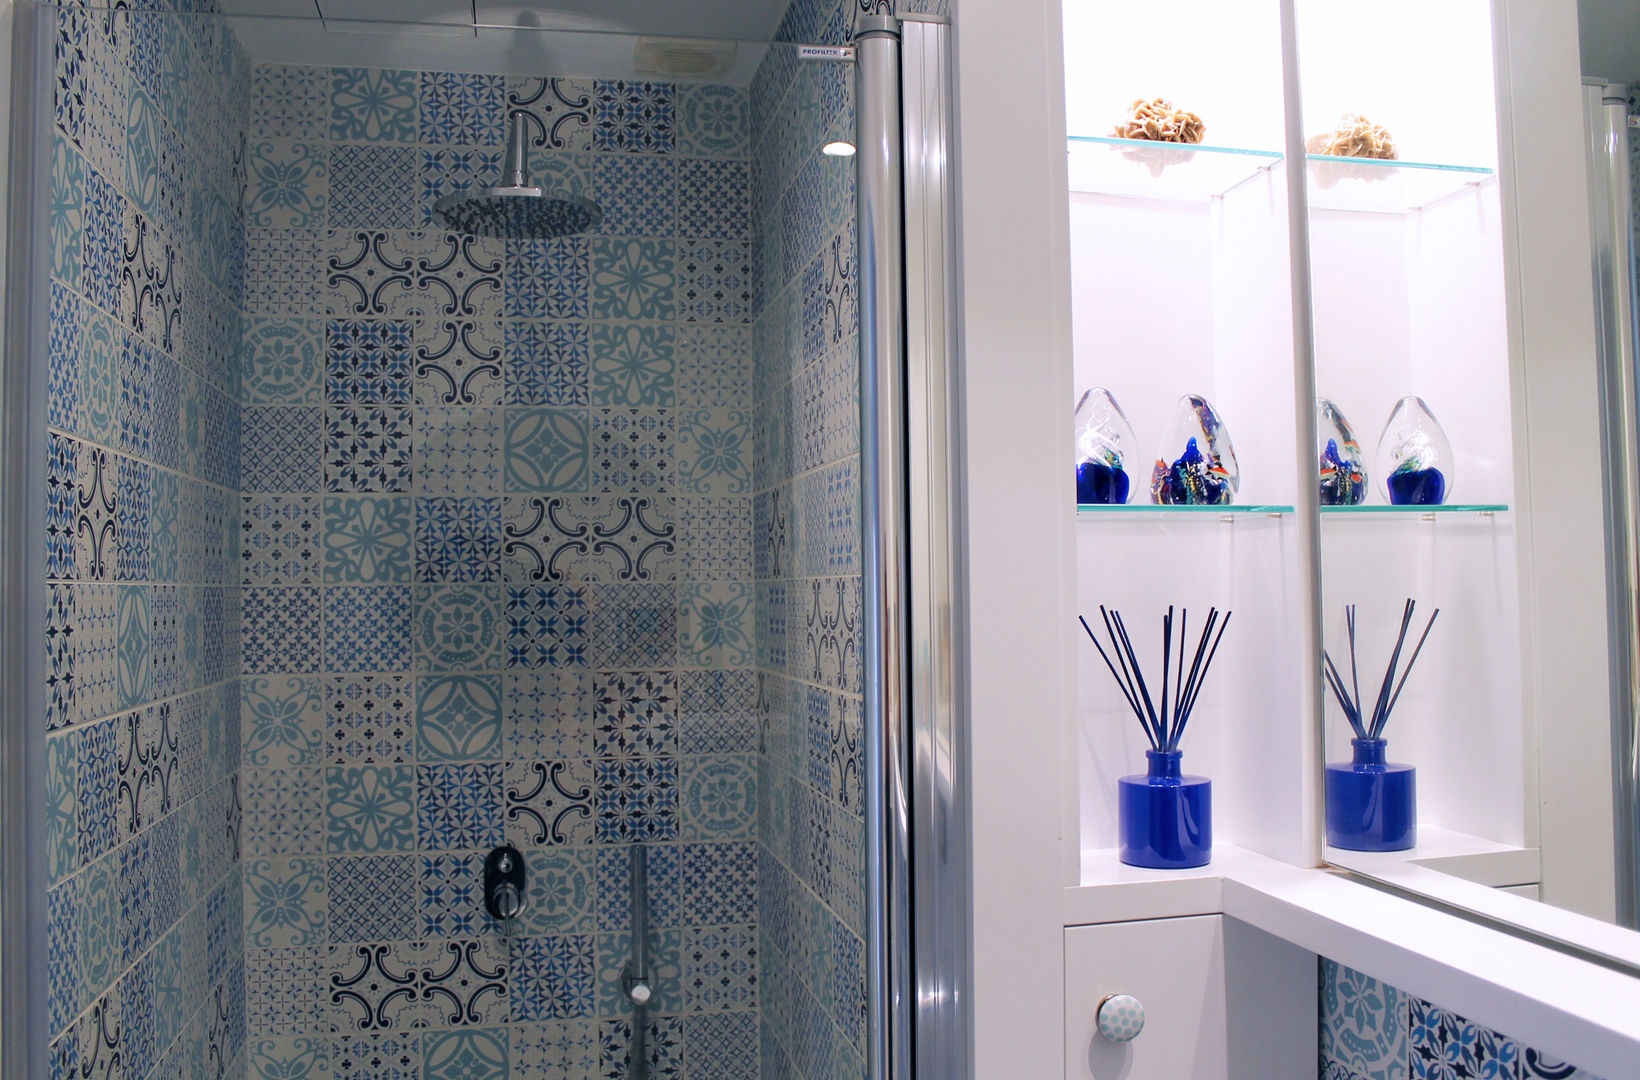 Baño suite. Eséncia mediterranea, lauraStrada Interiors lauraStrada Interiors Mediterranean style bathrooms